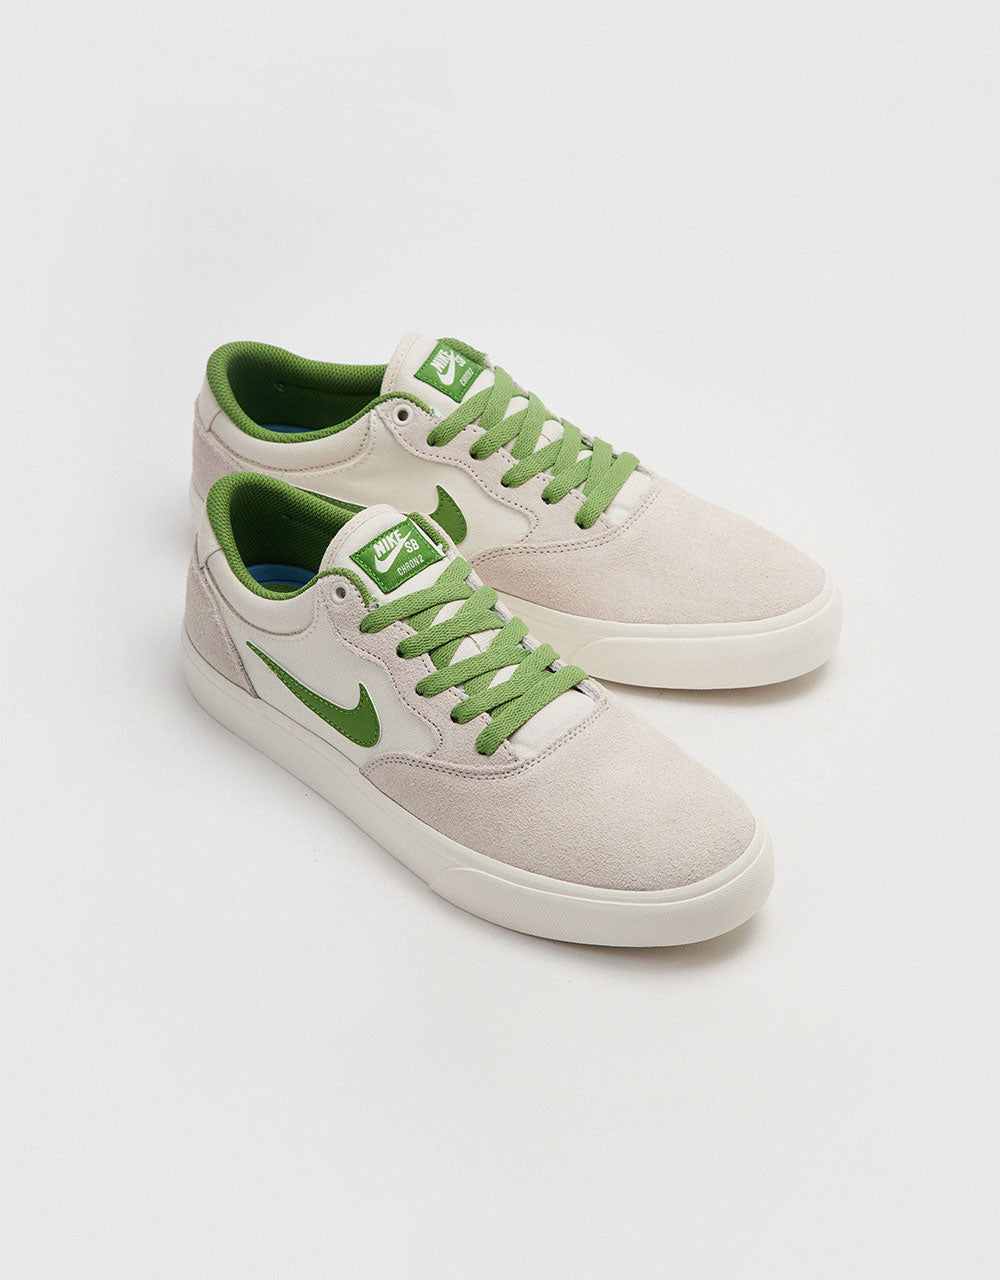 Nike SB Chron 2 Skate Shoes - Phantom/Chlorophyll-Summit White-Sail